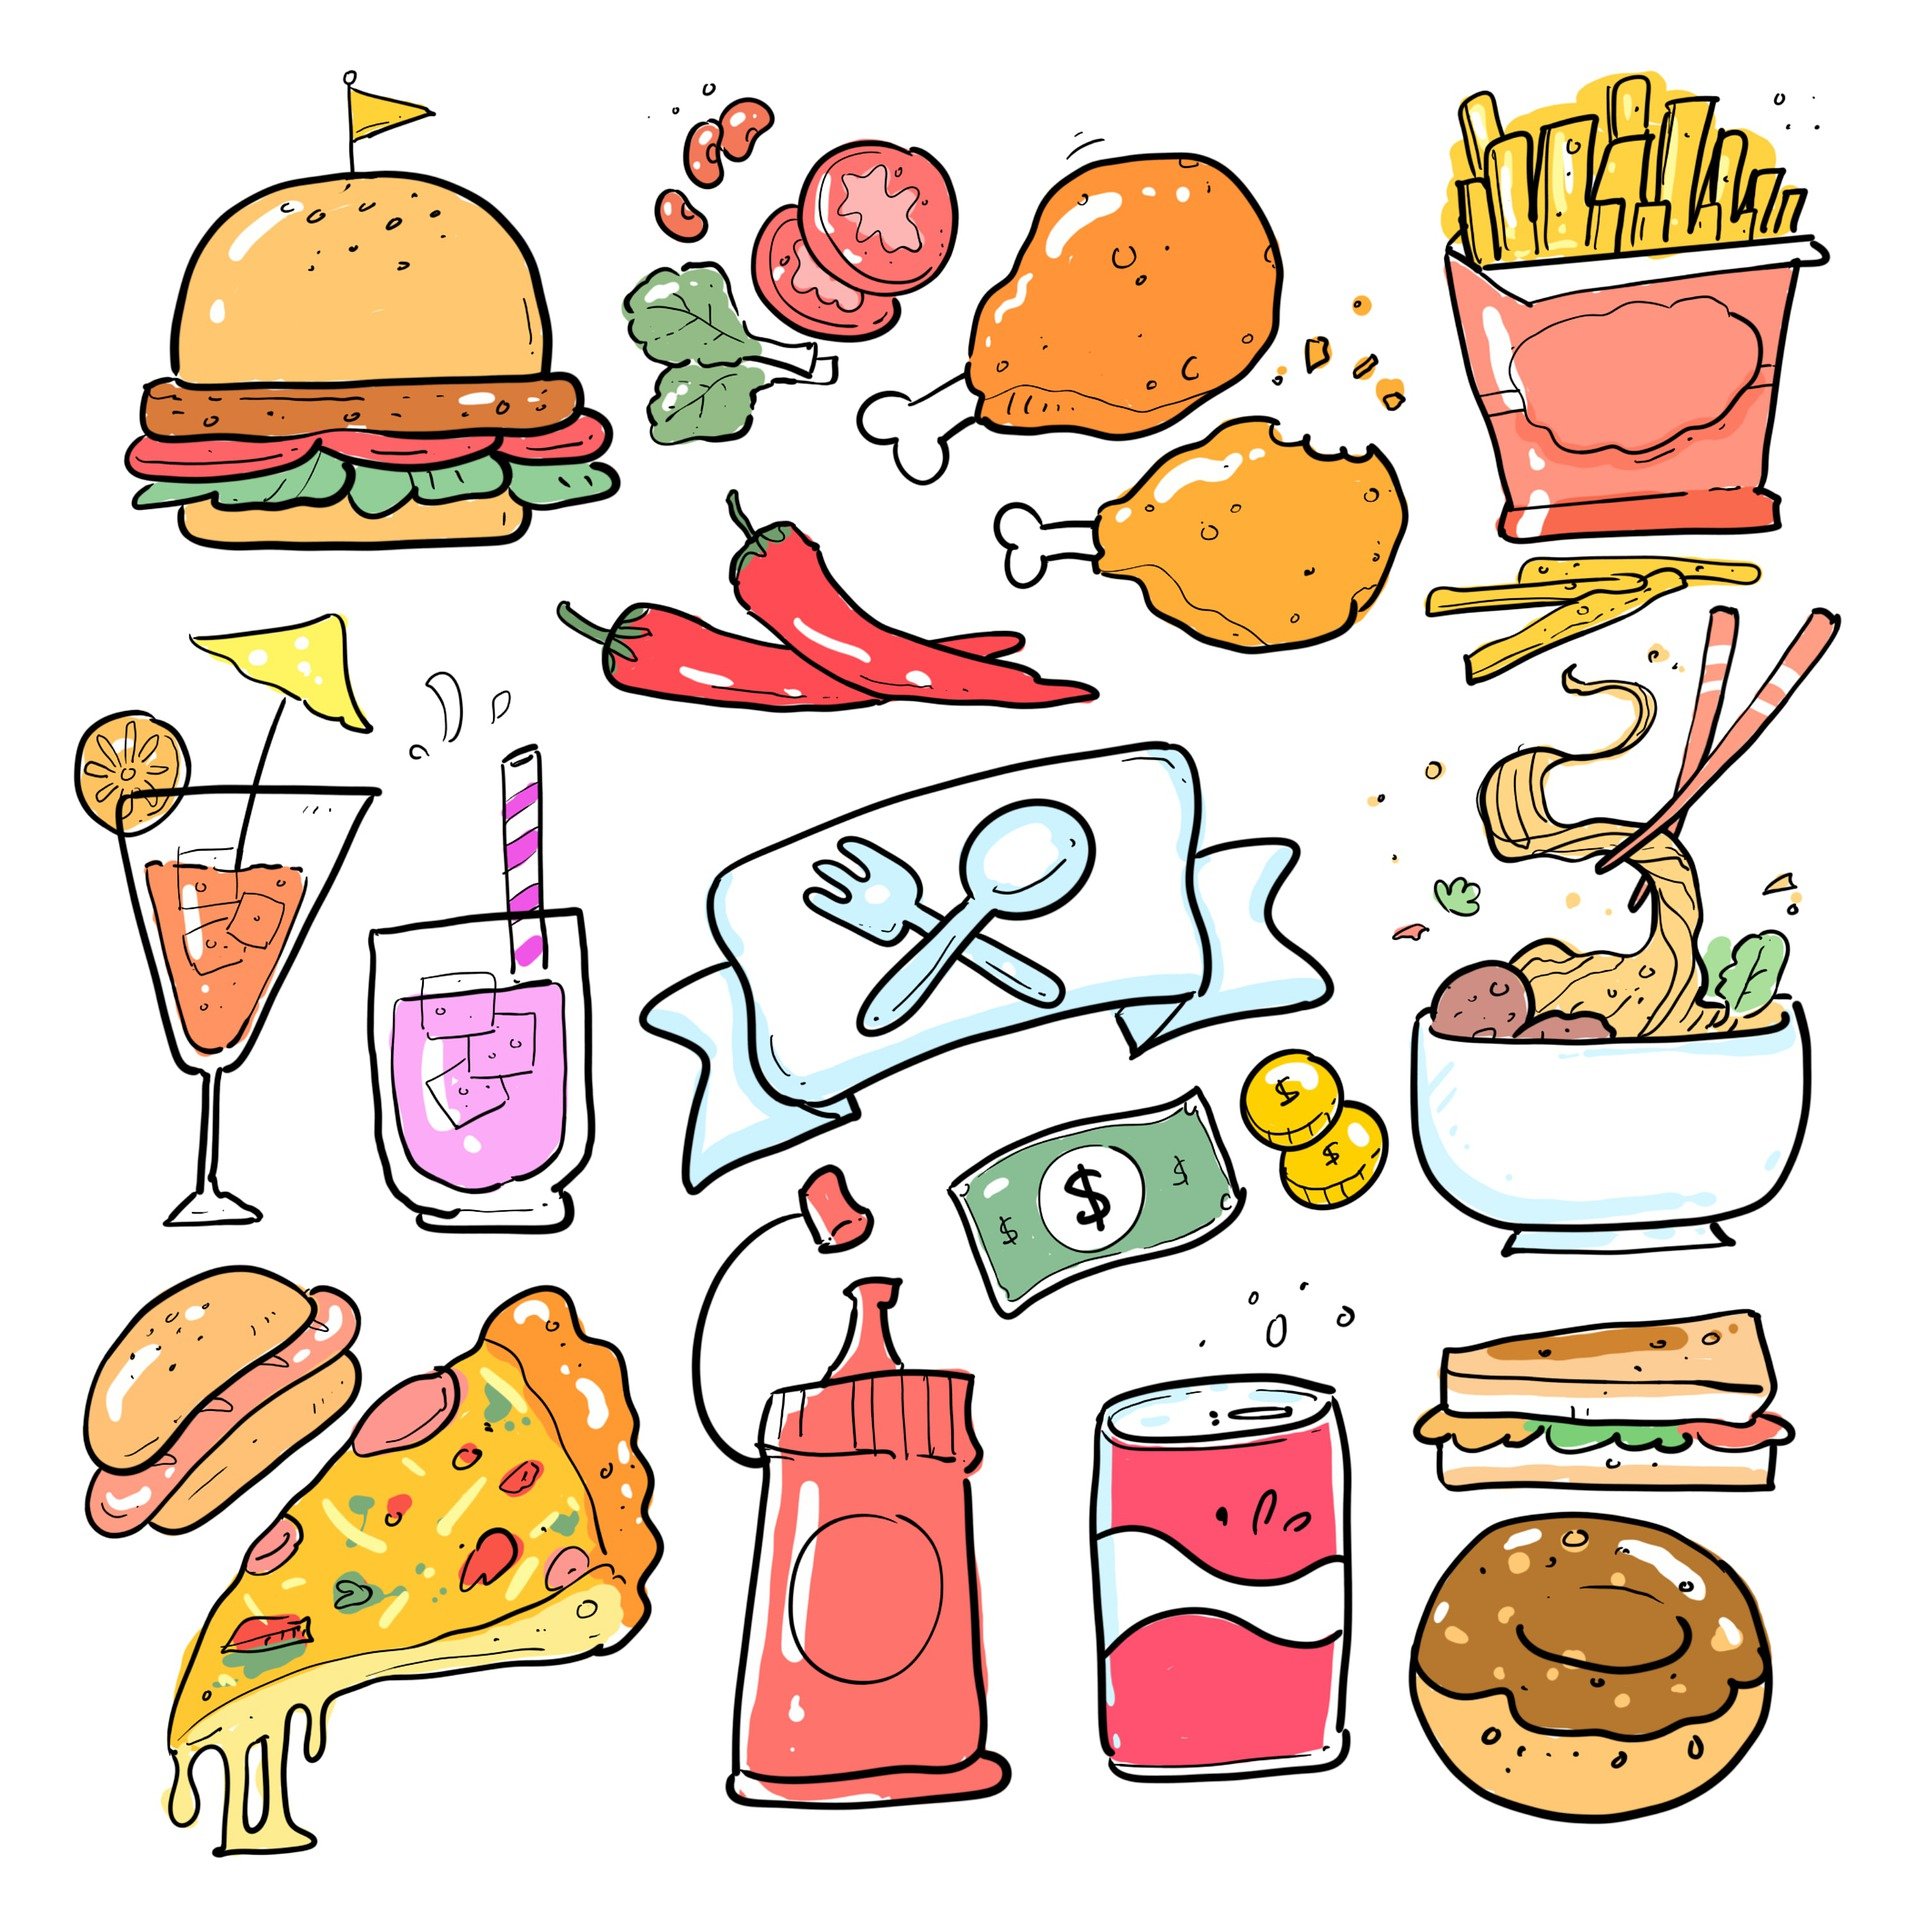 La imagen muestra varios dibujos de comidas y bebidas